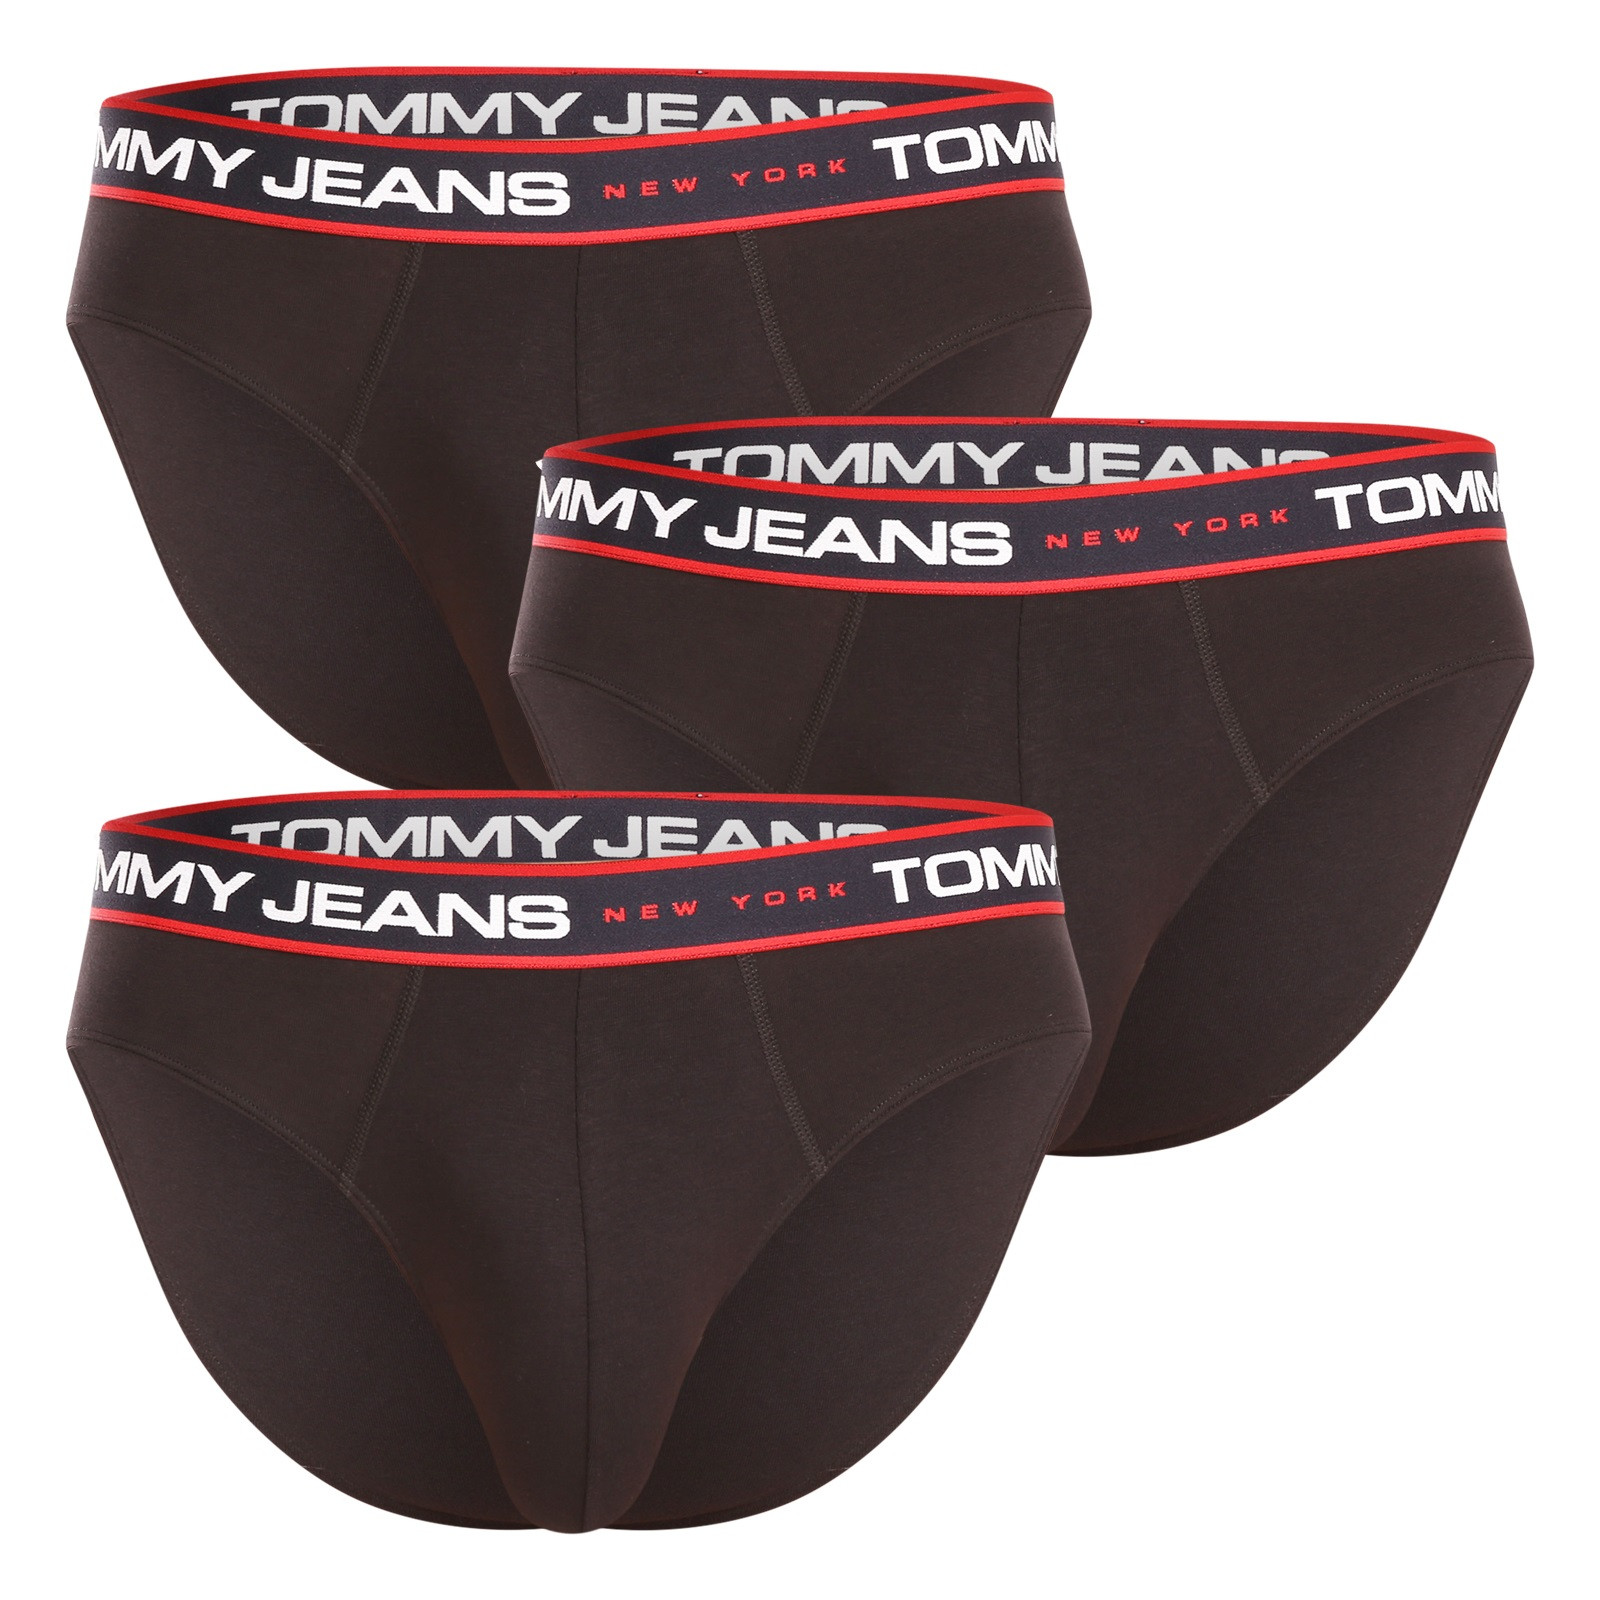 Men's Tommy Hilfiger Underwear Boxers